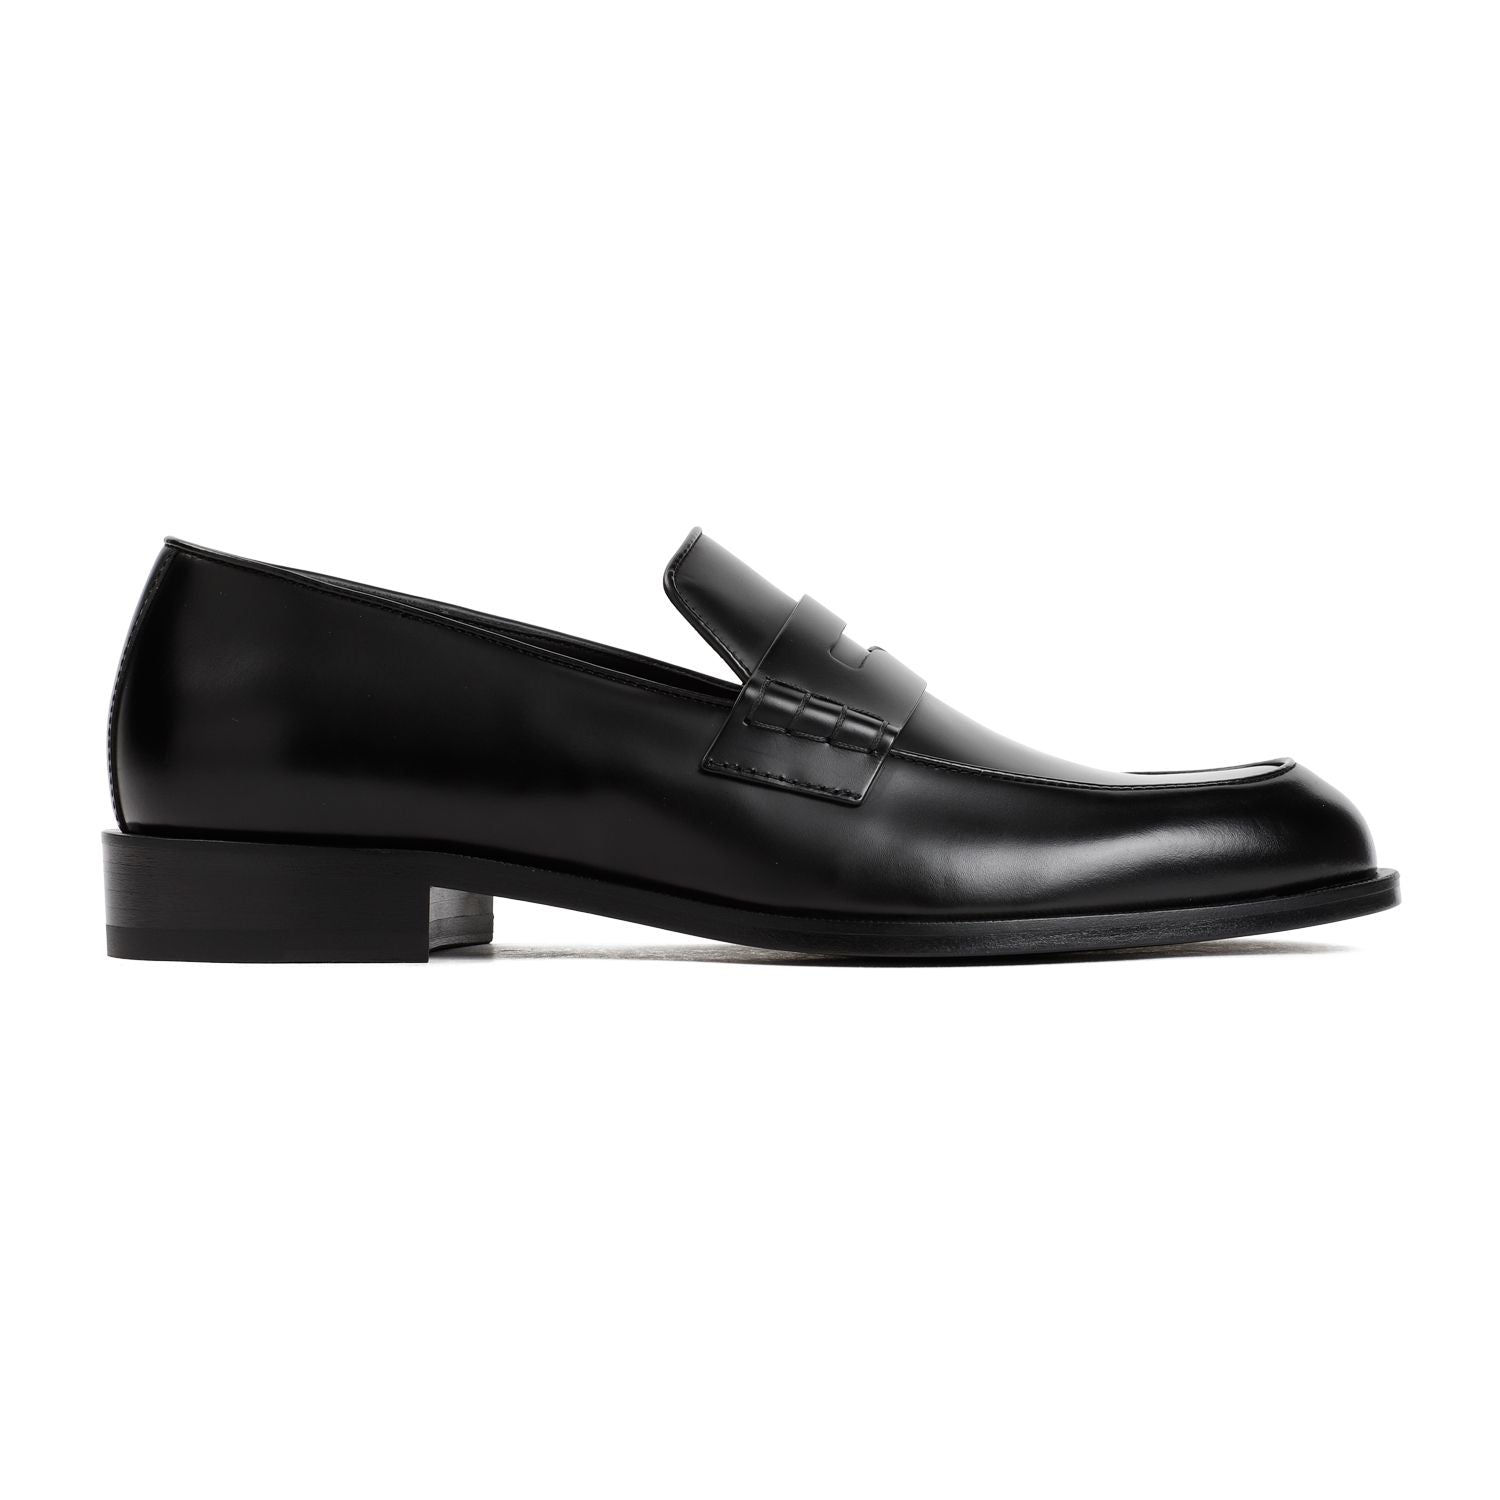 Giorgio Armani Men's Black Leather Bull Loafers